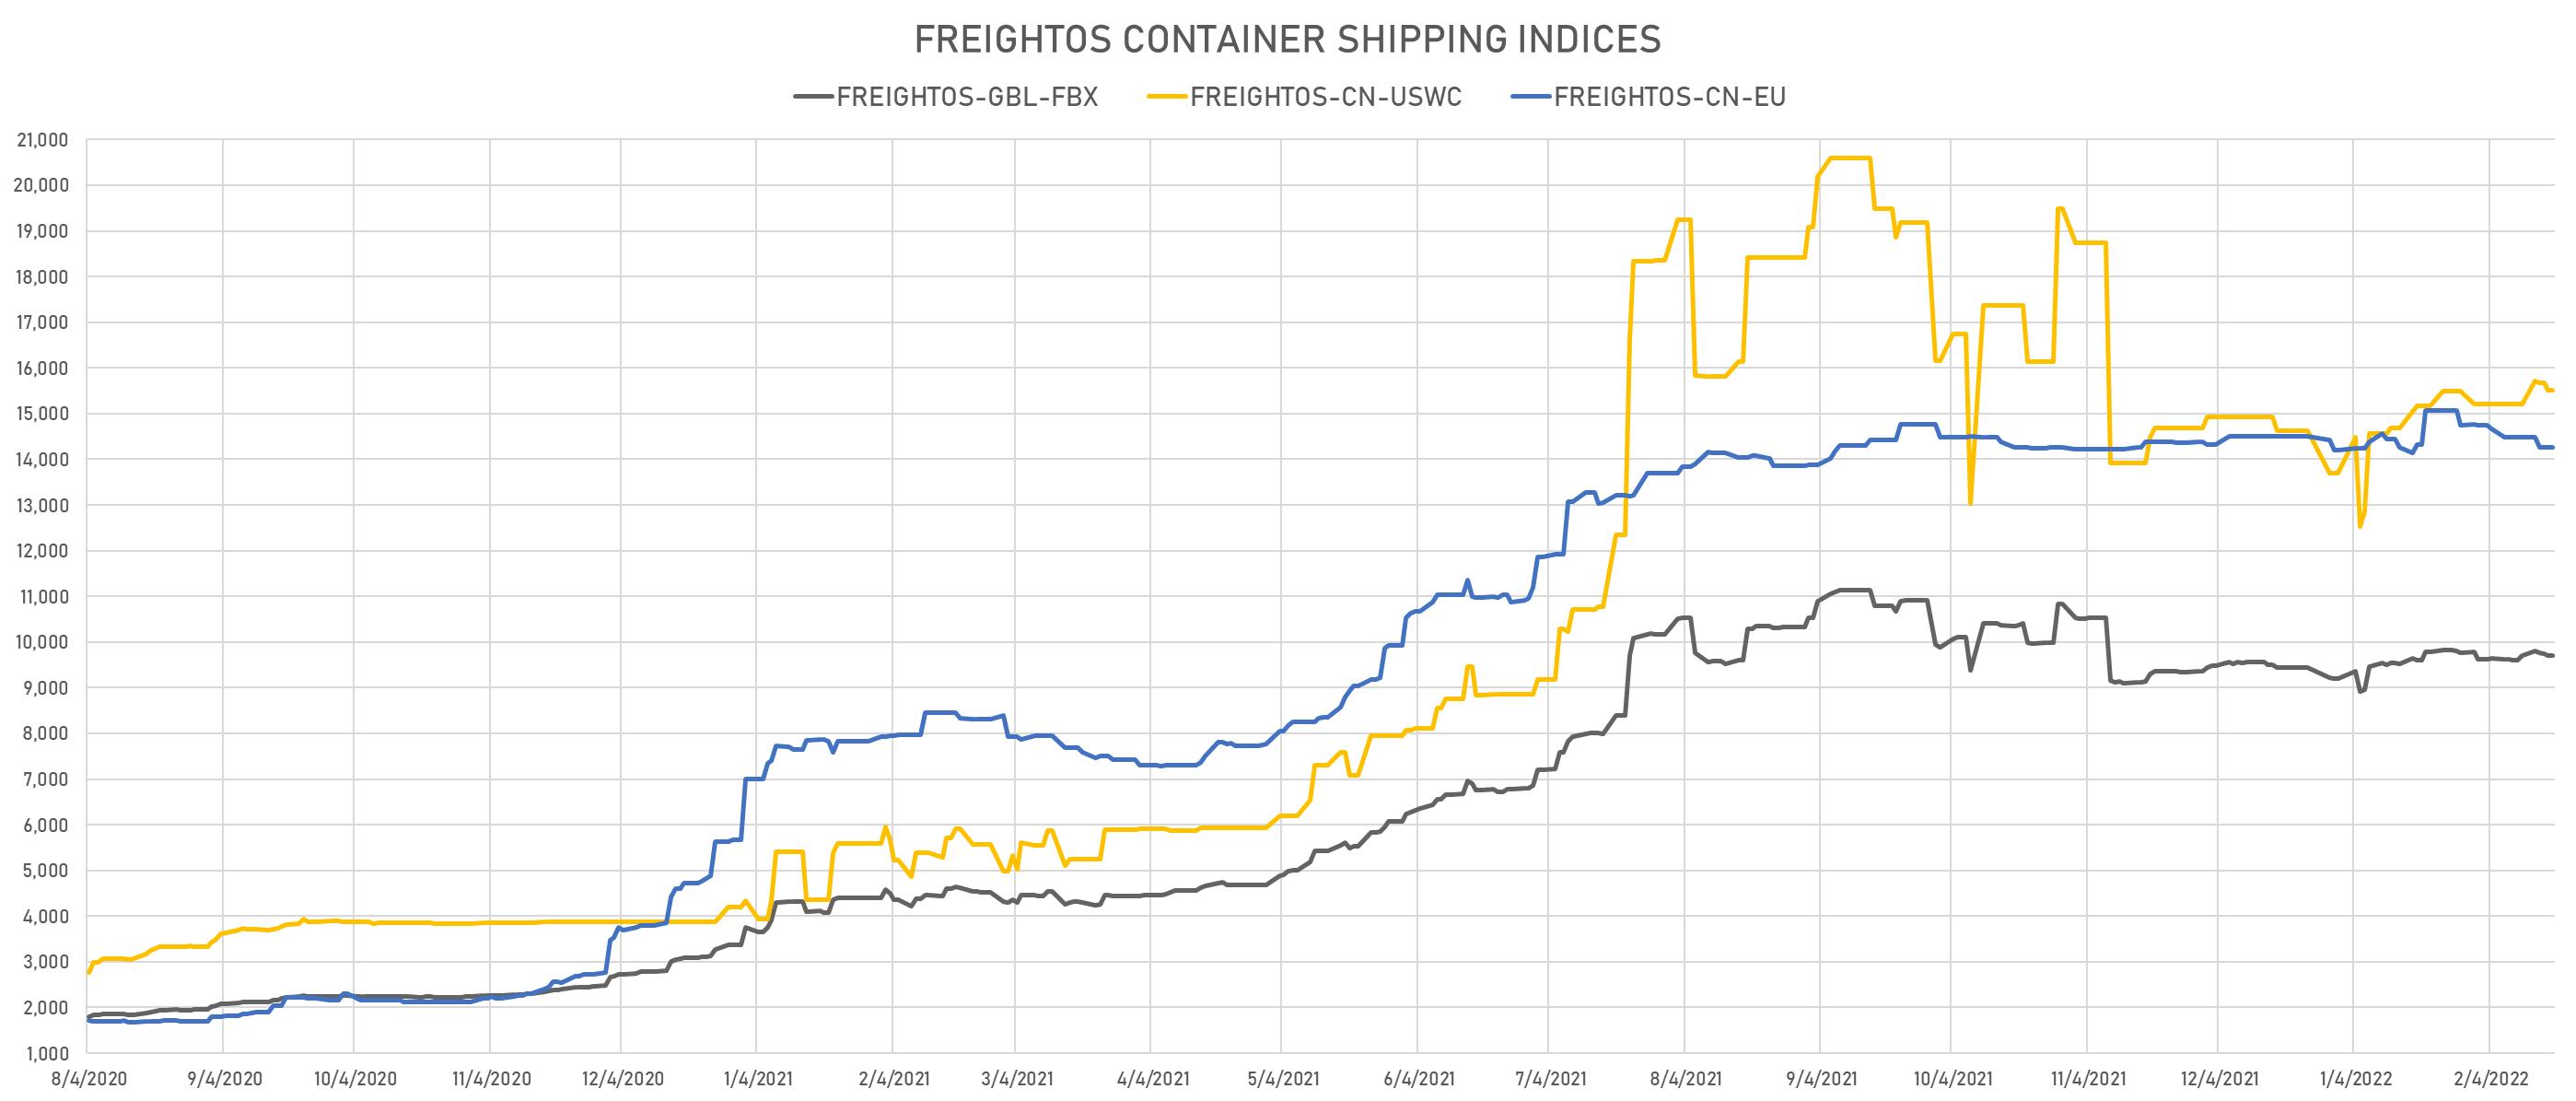 Freightos Container Indices | Sources: phipost.com, Refinitiv data